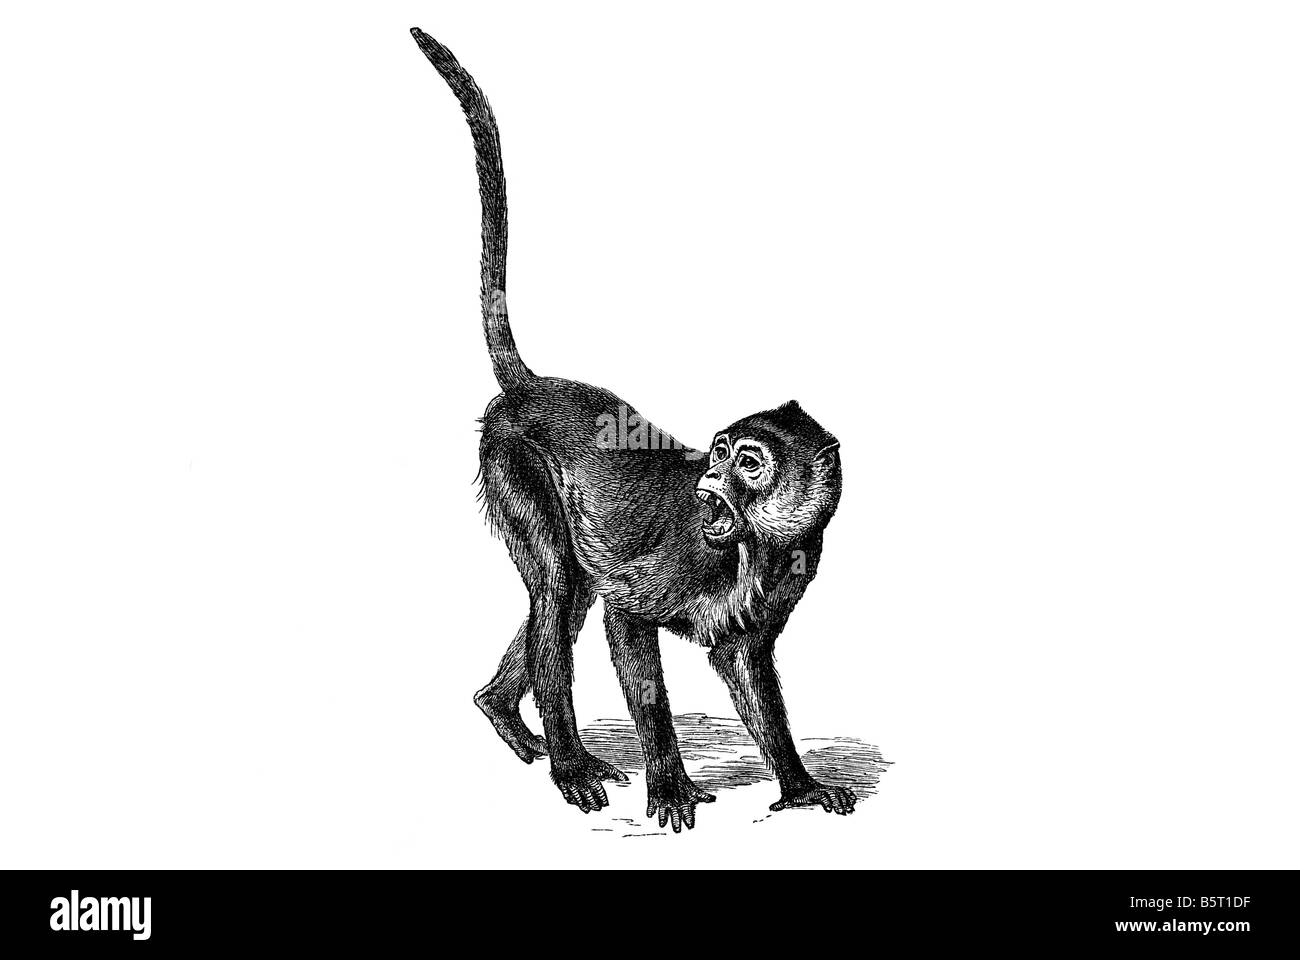 Colobinae colobine scimmie urlanti, ape asiatica di scimmia del Vecchio Mondo Foto Stock